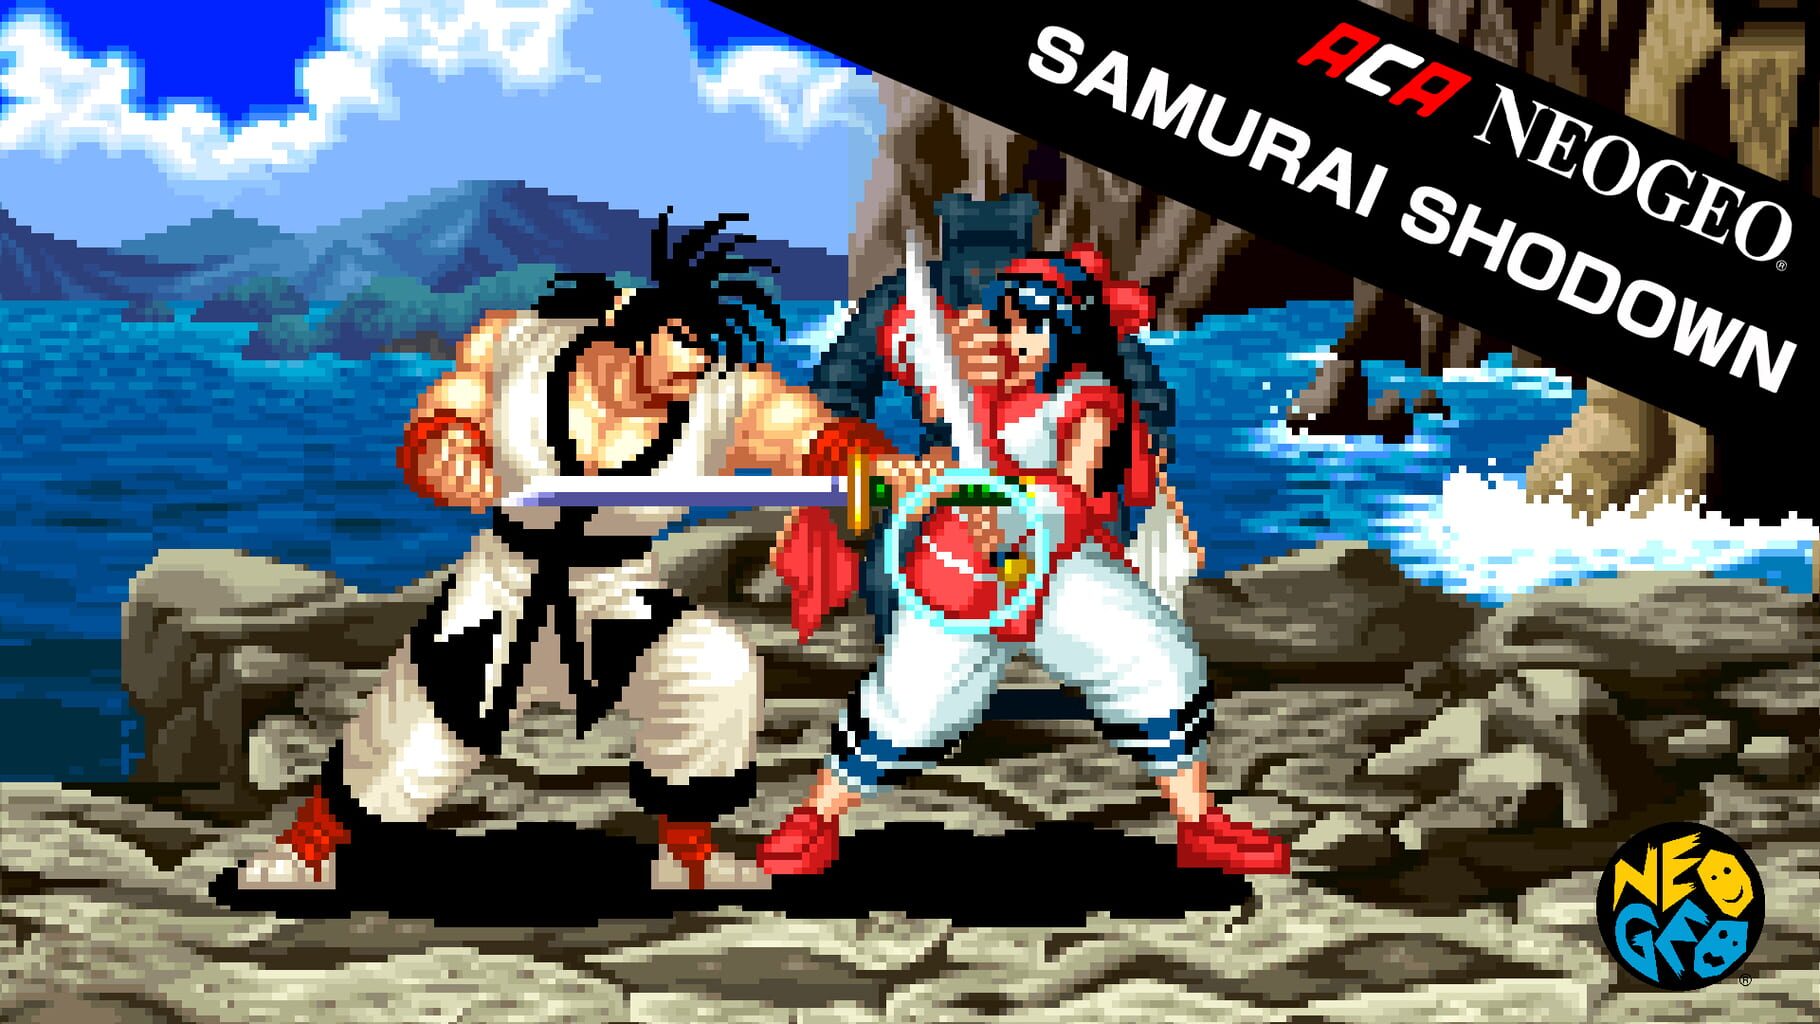 Arte - ACA Neo Geo: Samurai Shodown